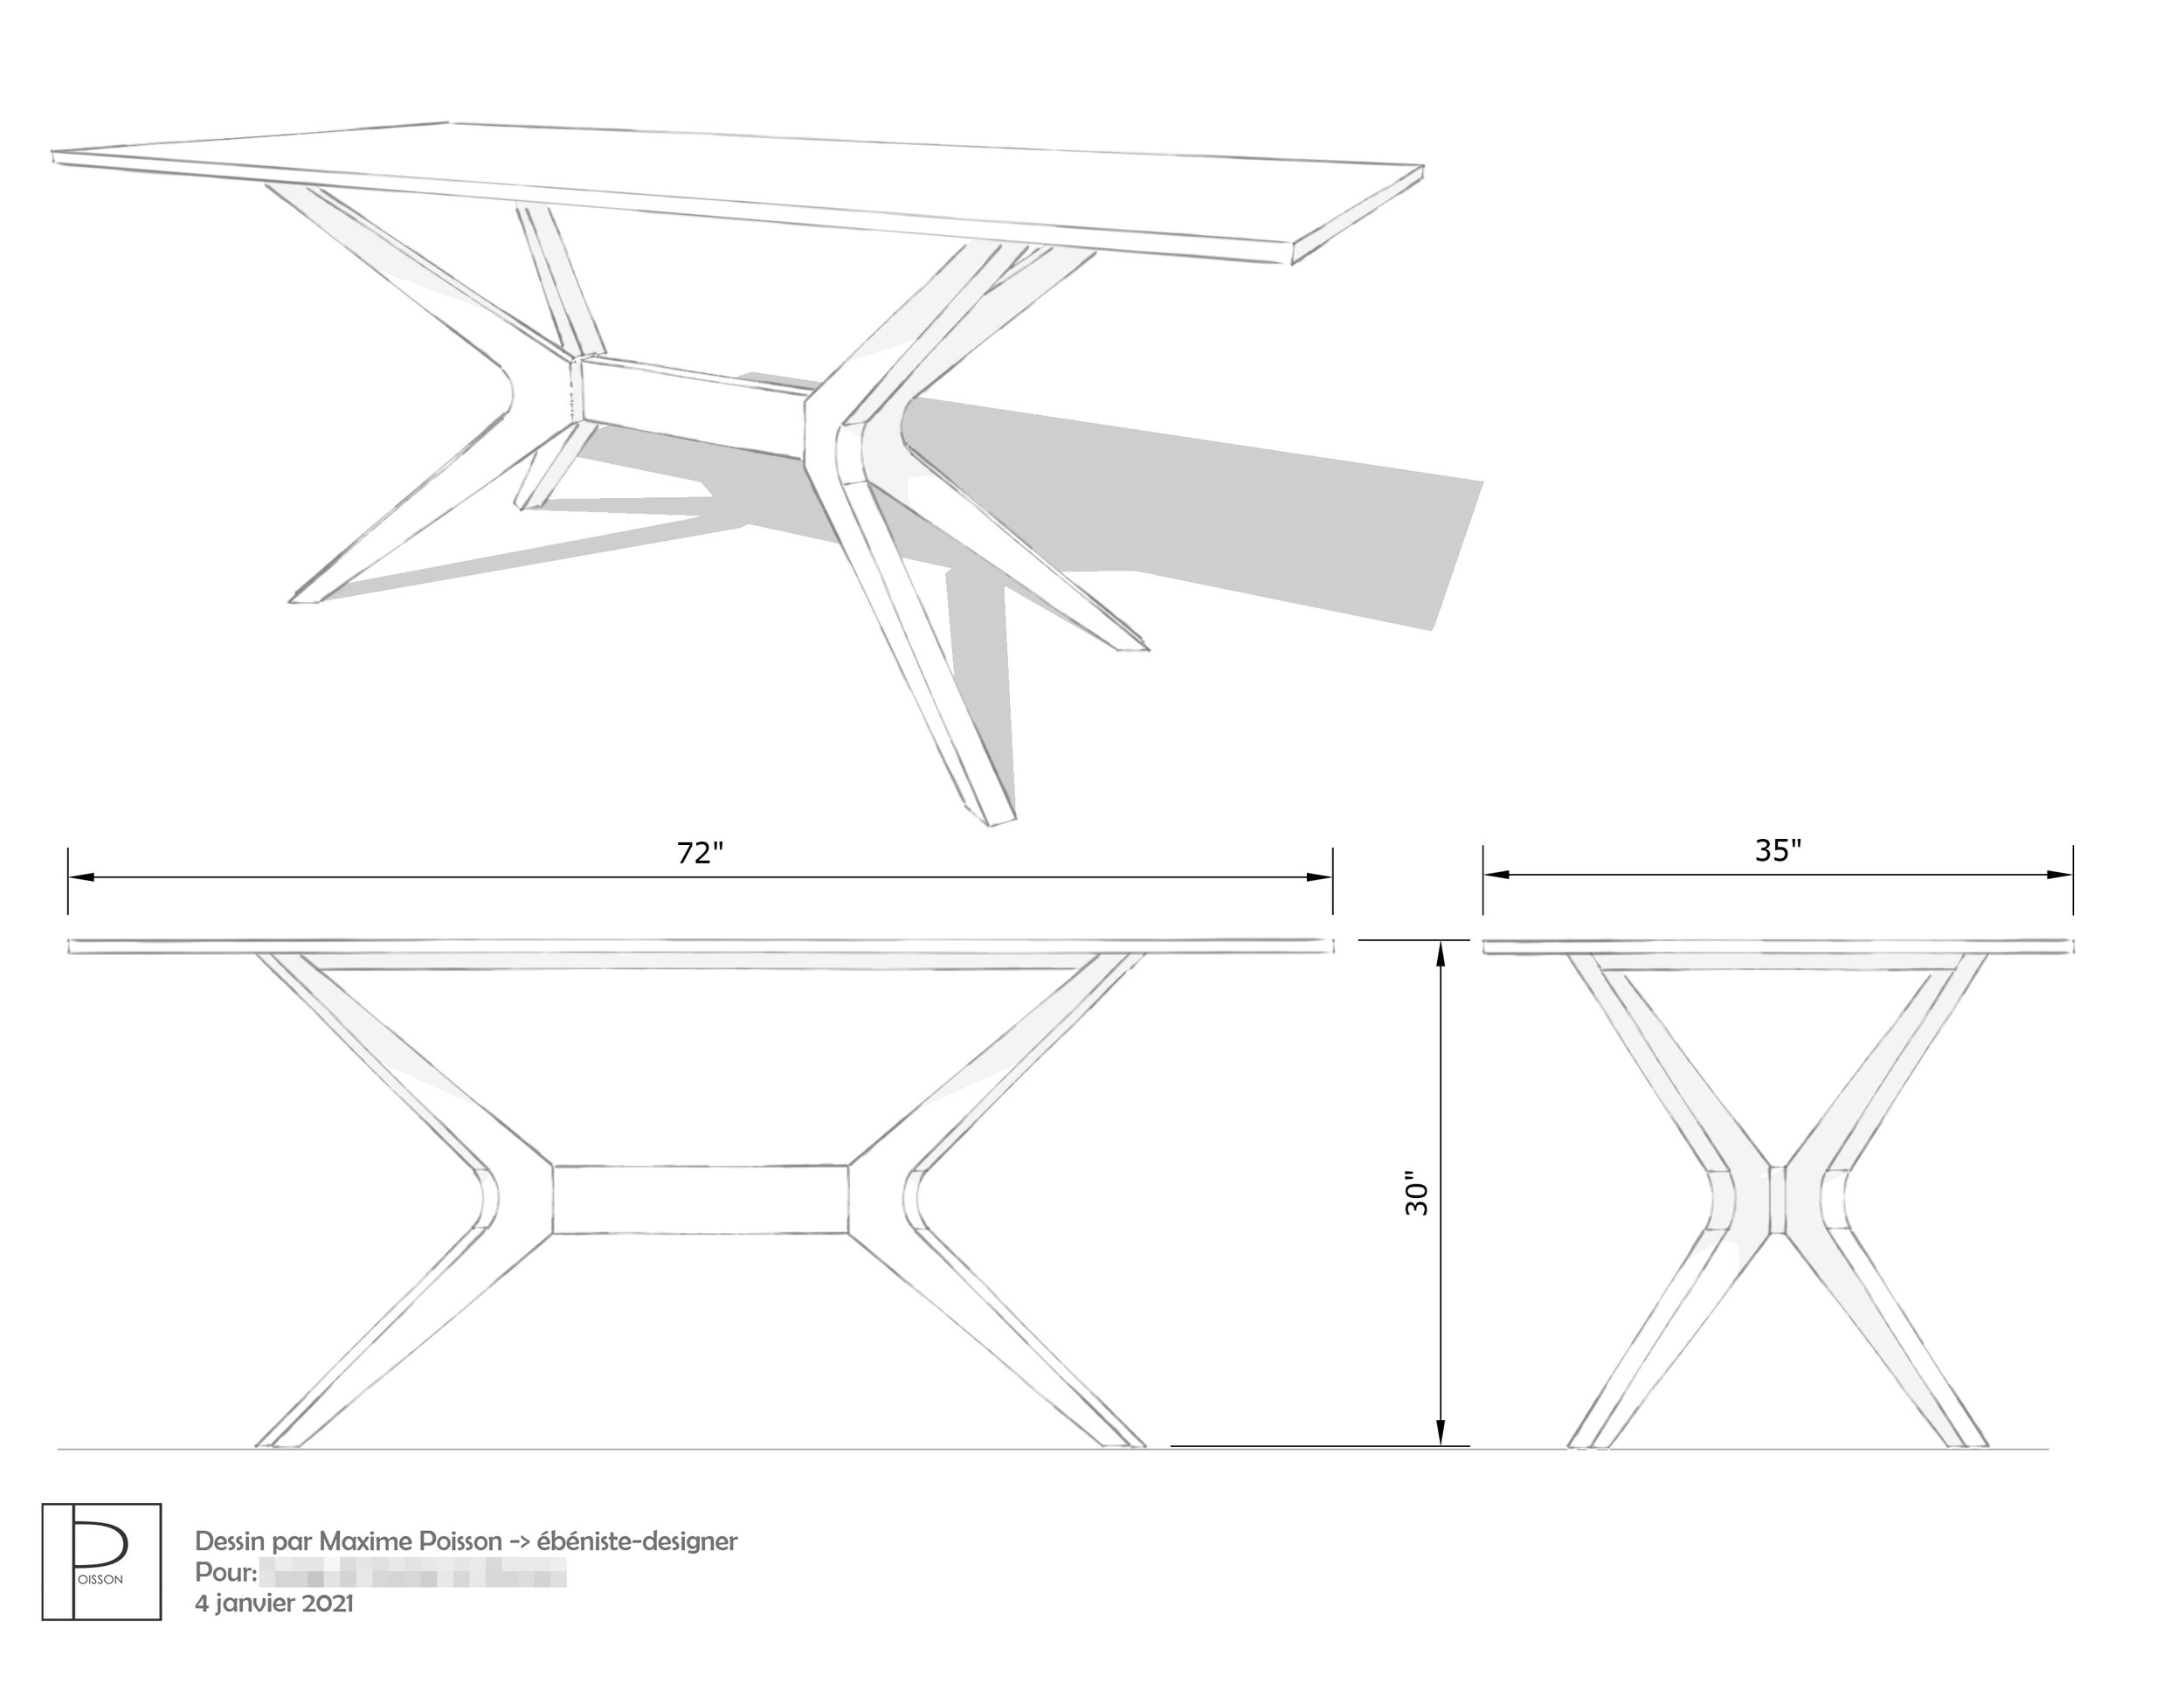 Dessin 3 dimensions d'une table de cuisine (copie)